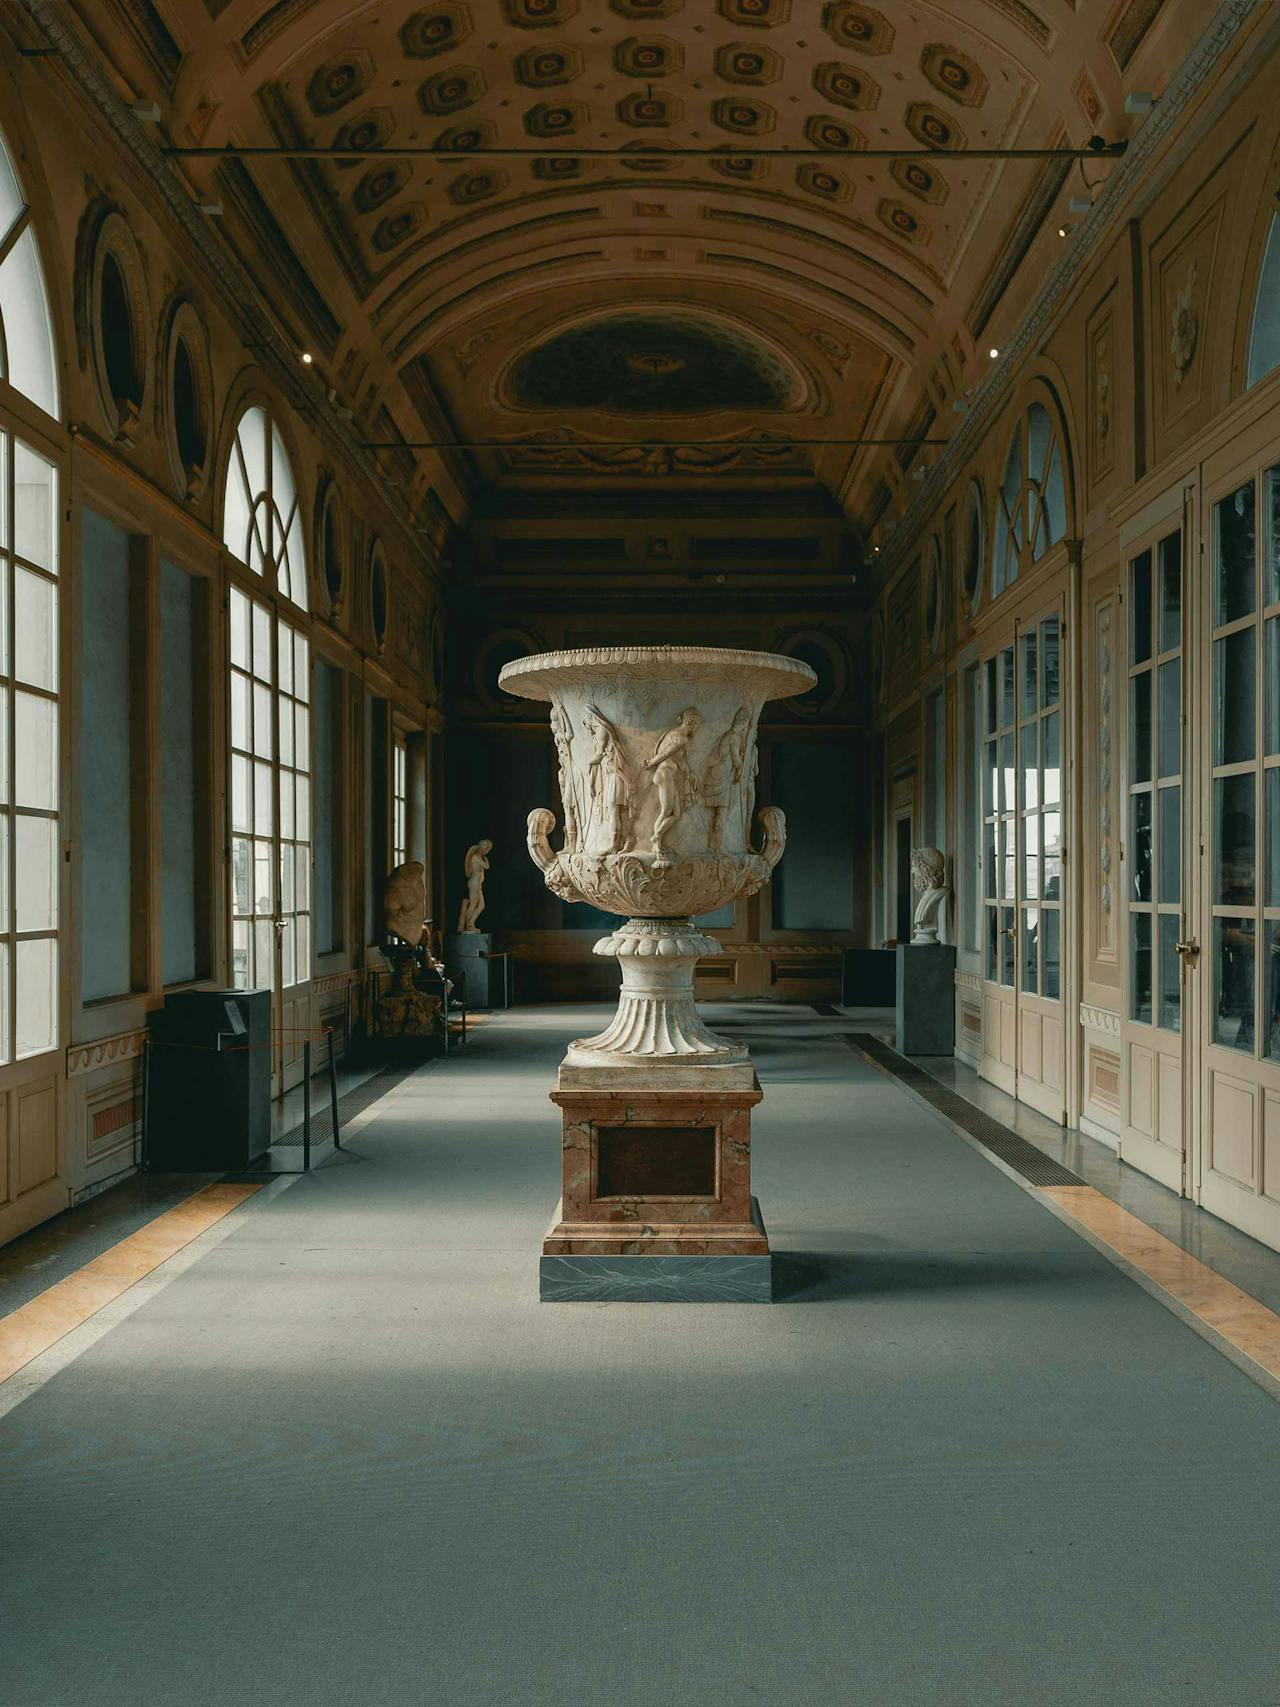 Image: Galleria degli Uffizi/Clay Banks via Unsplash